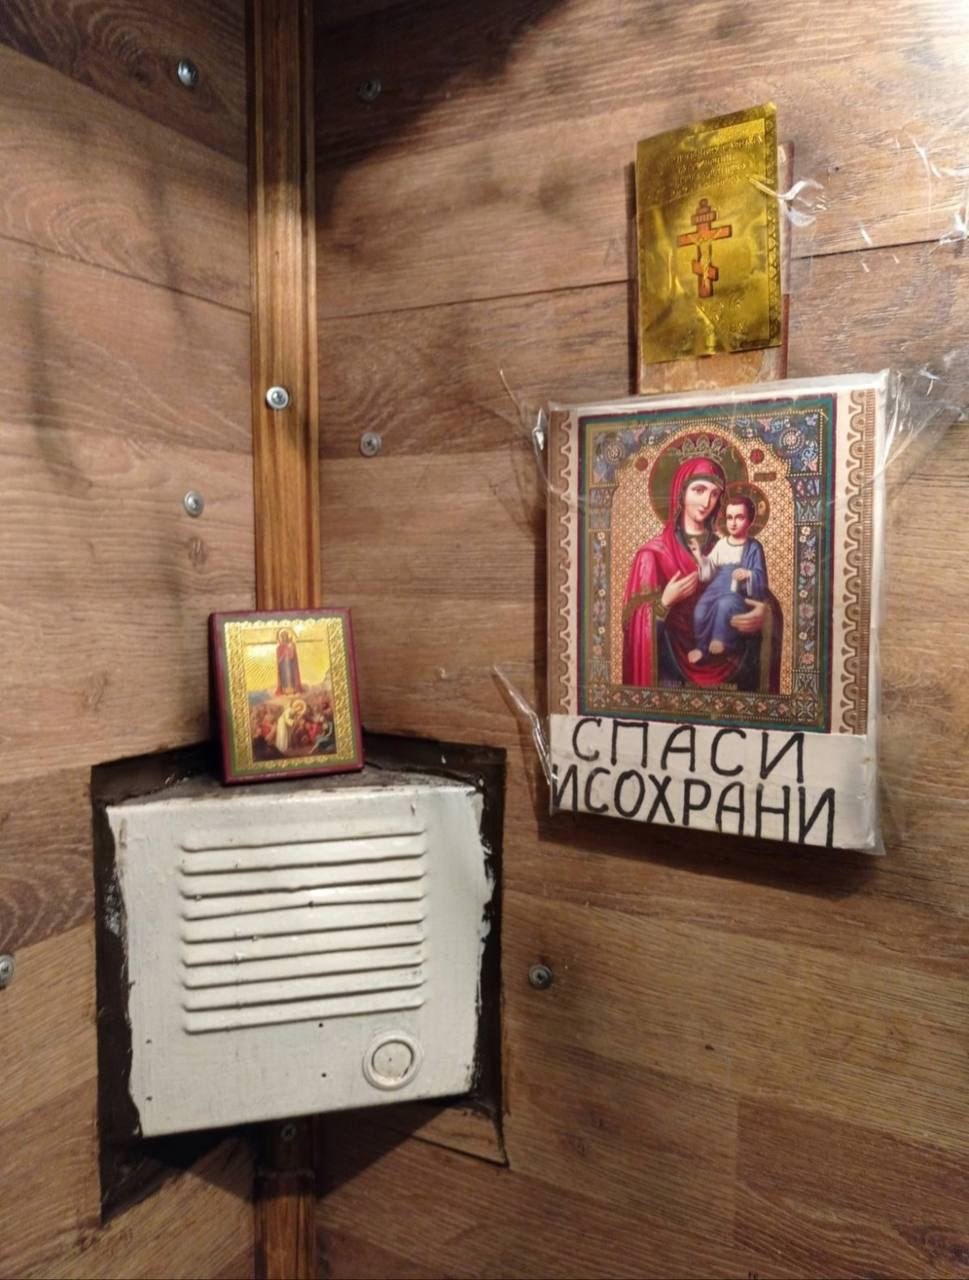 В Киеве лифт вместо средств связи оборудовали иконами и надписями «Спаси и Сохрани» (ФОТО)